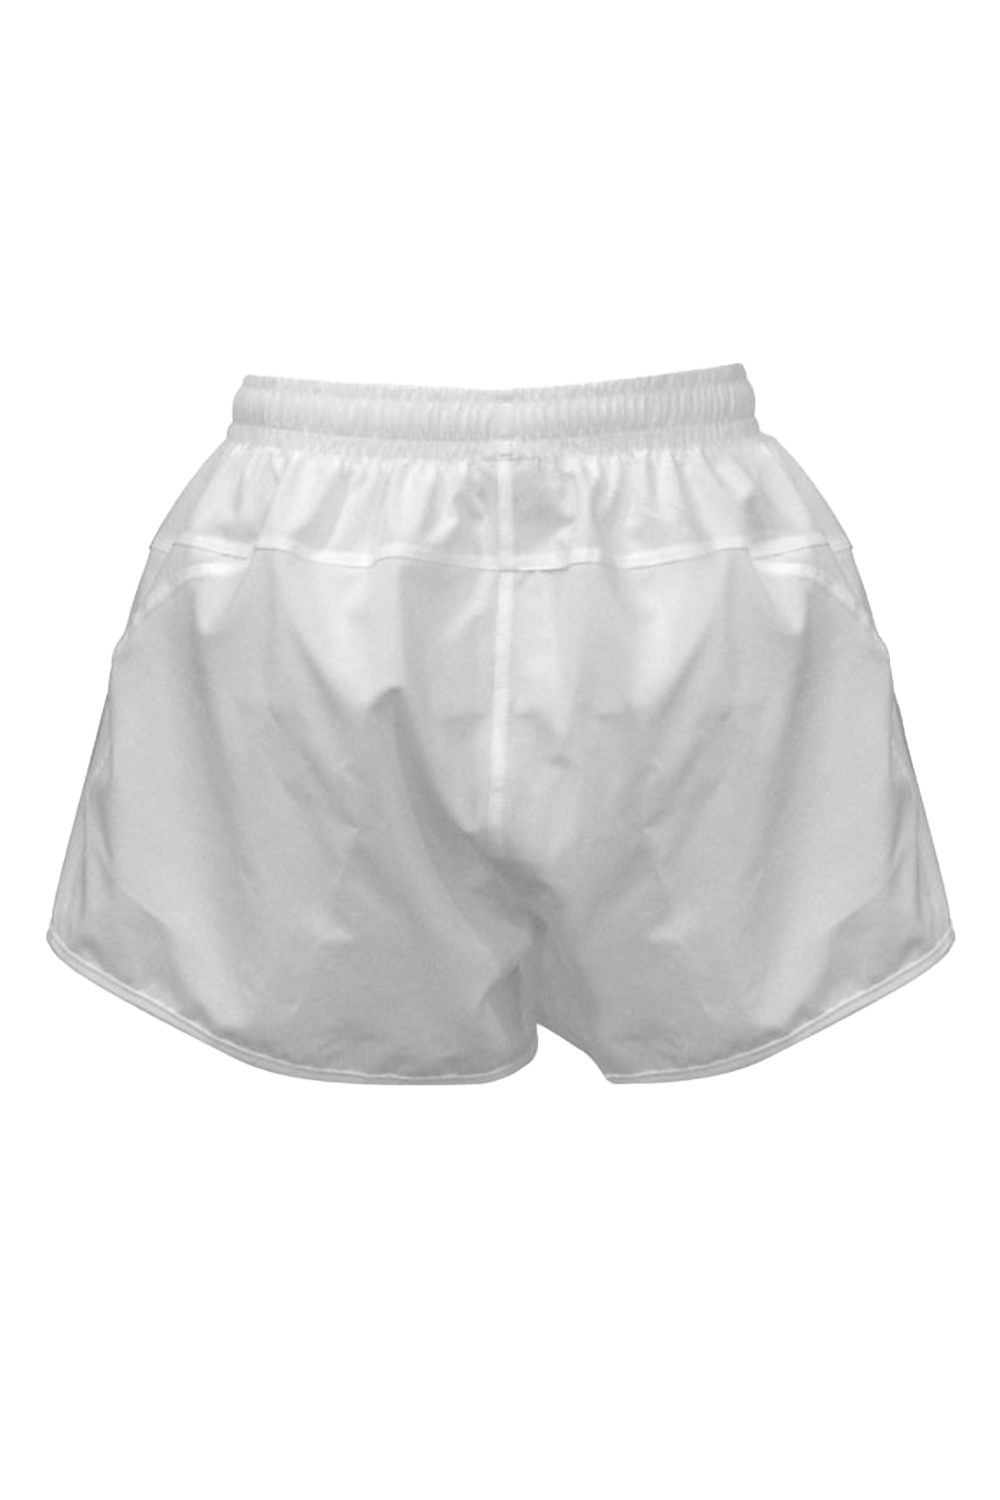 Racer Shorts (White)